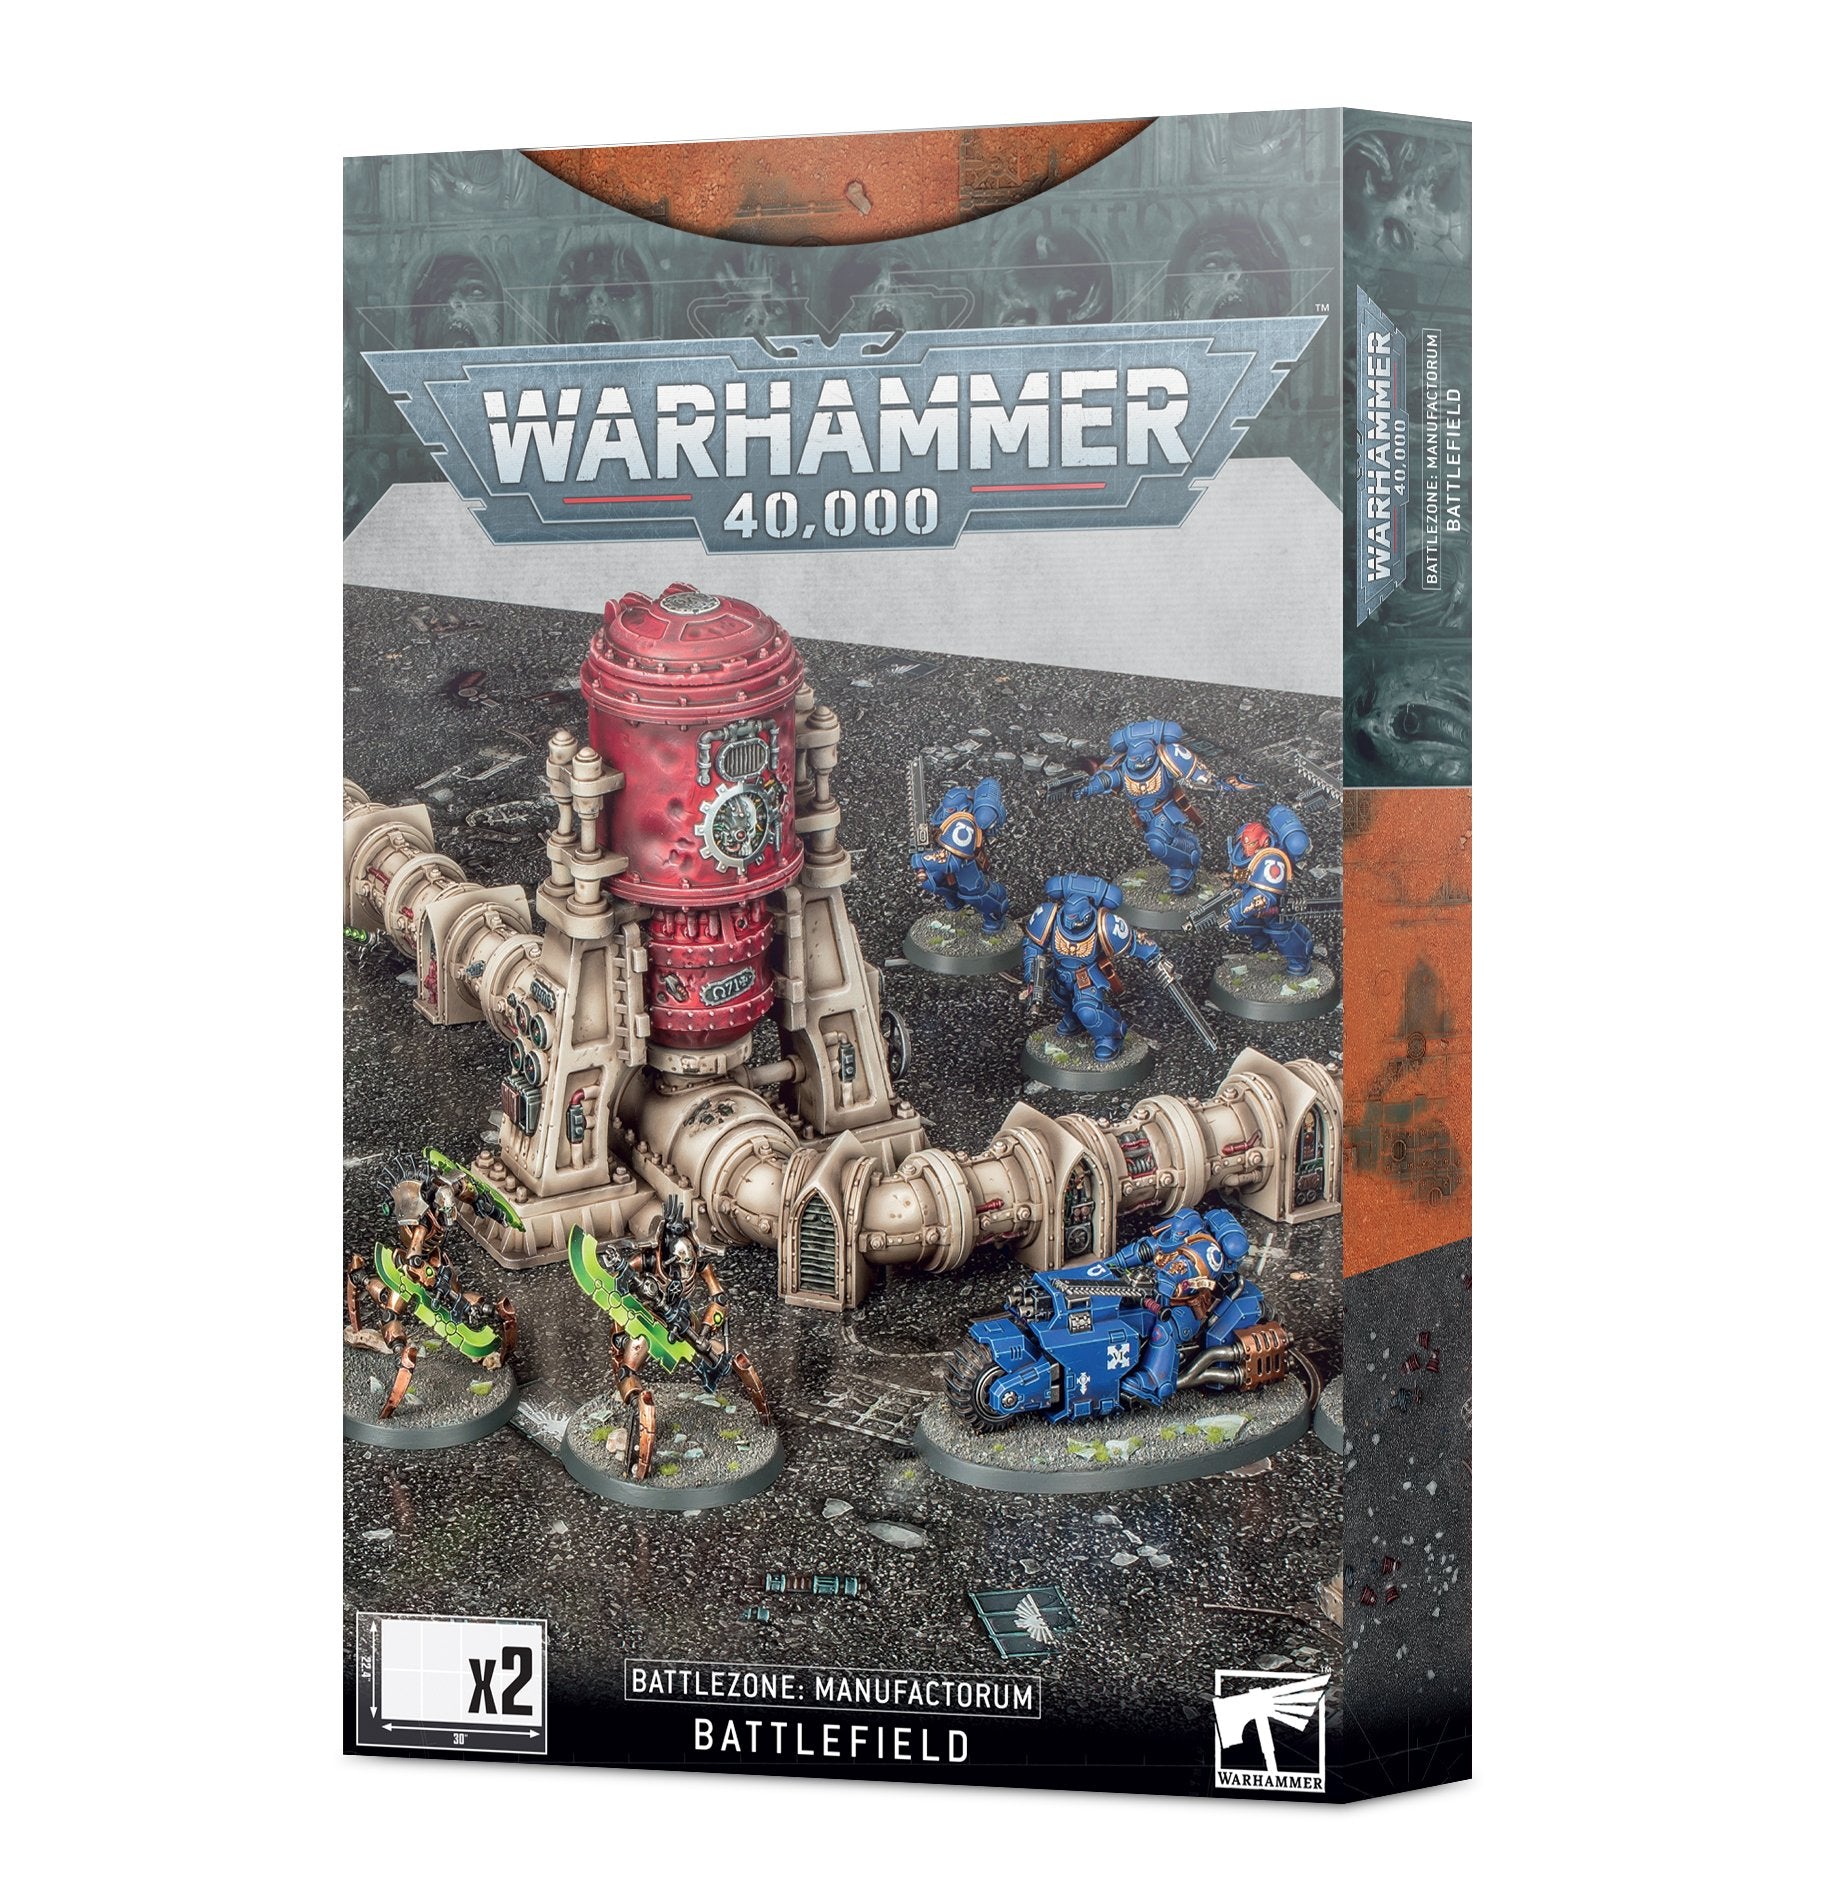 Warhammer 40,000: Battlezone: Manufactorium Battlefield